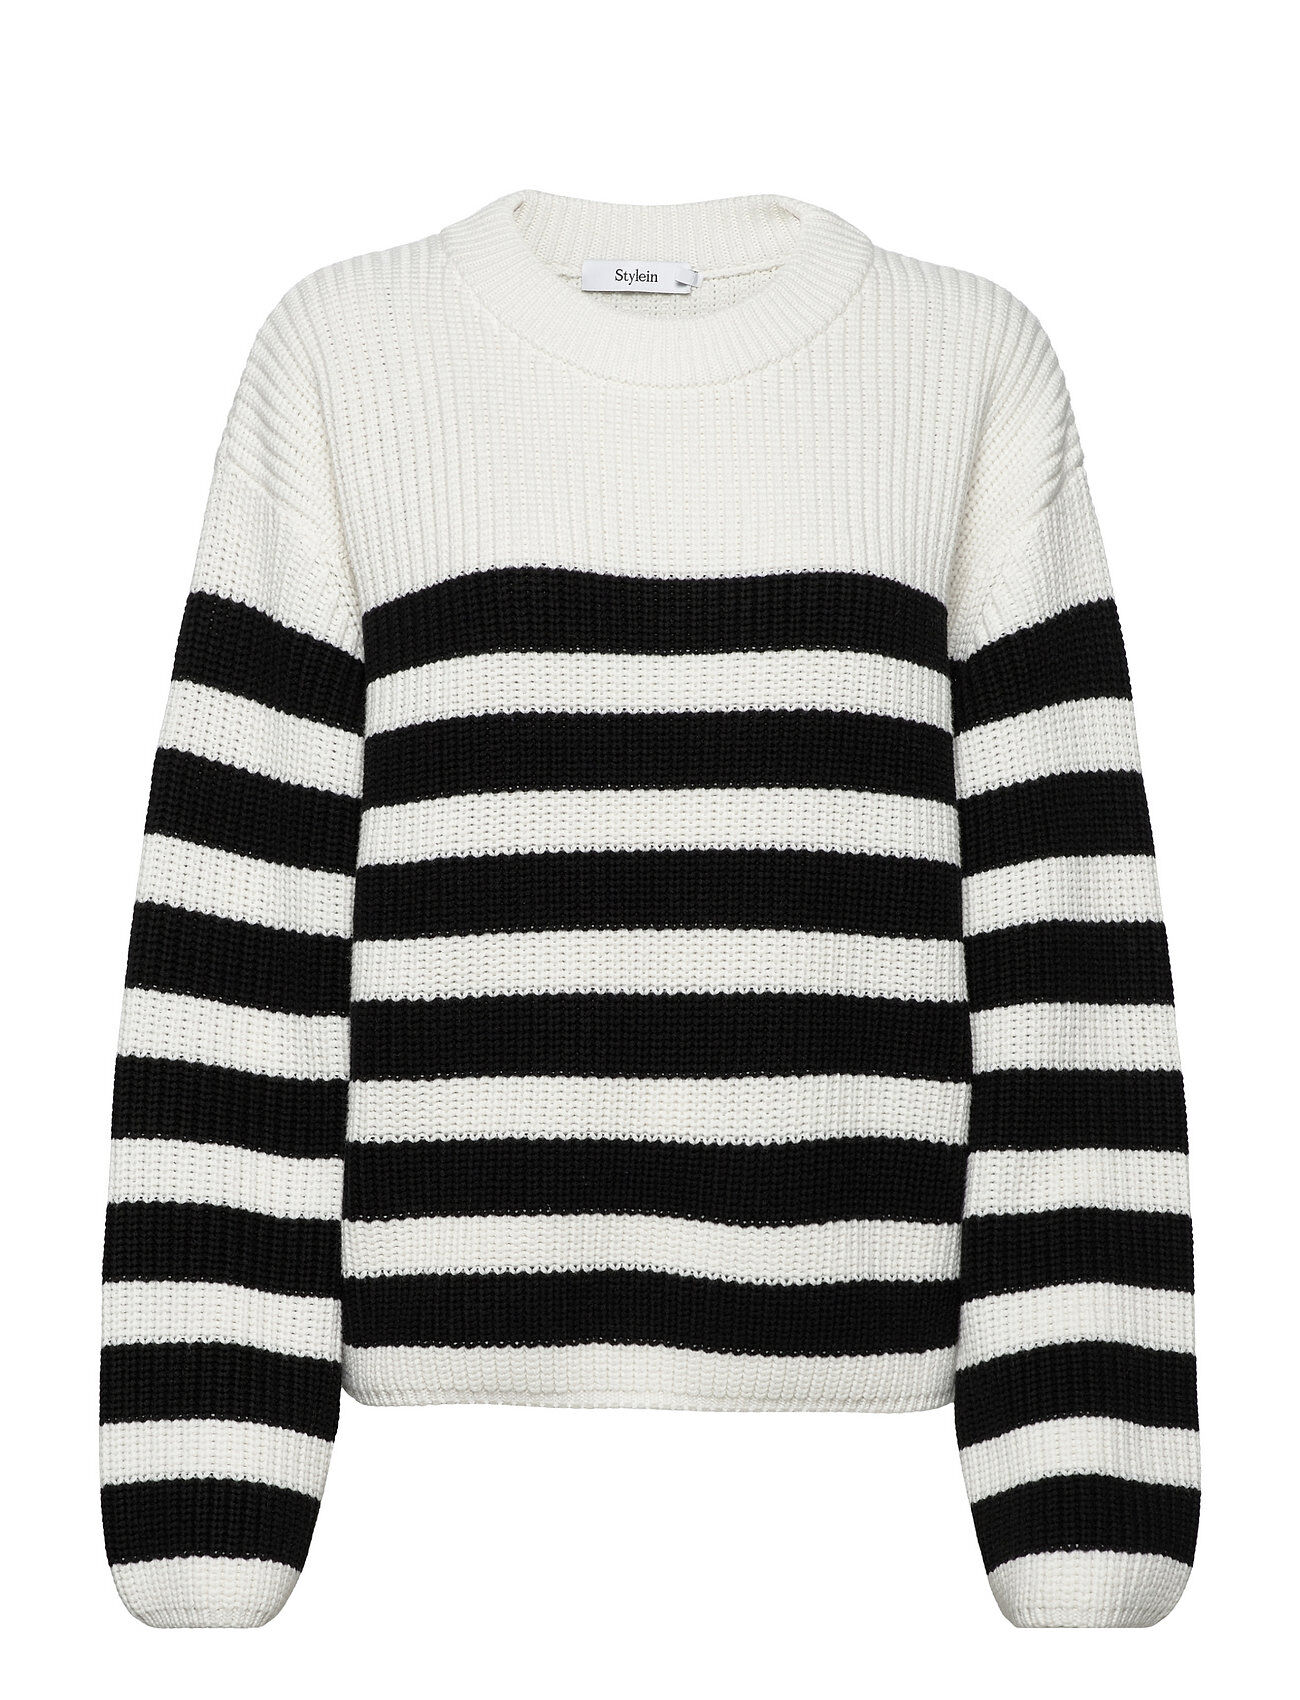 Stylein Aubry Sweater Pullover Multi/mønstret Stylein